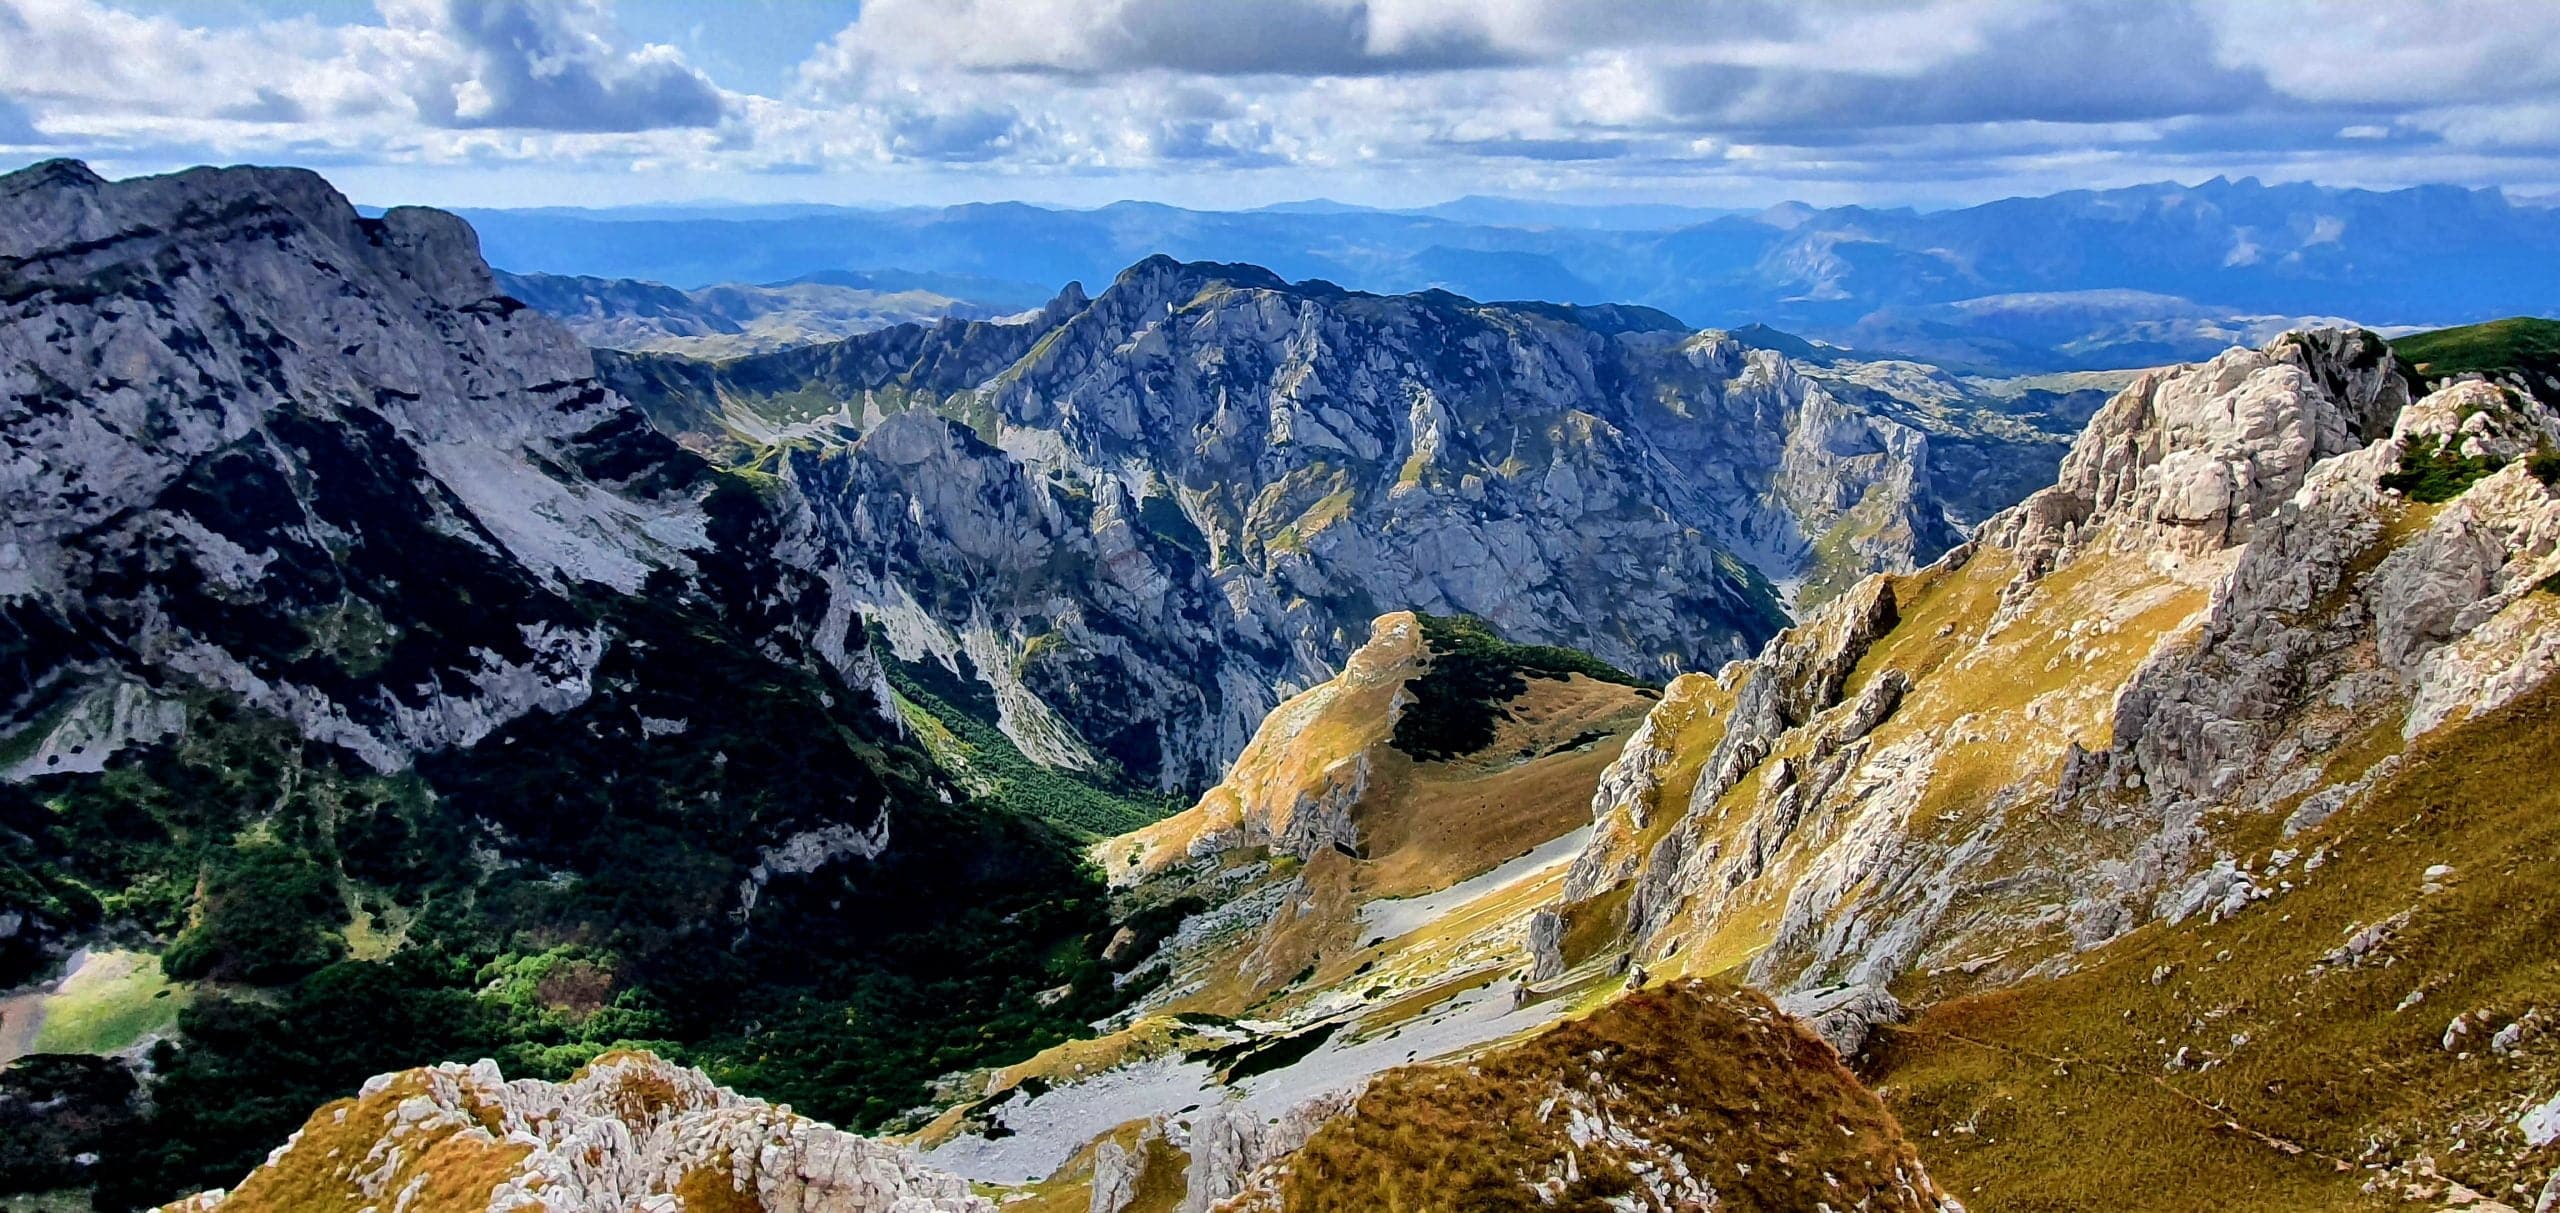 Hiken in Montenegro, Durmitor National Park: Planinica met 360° view